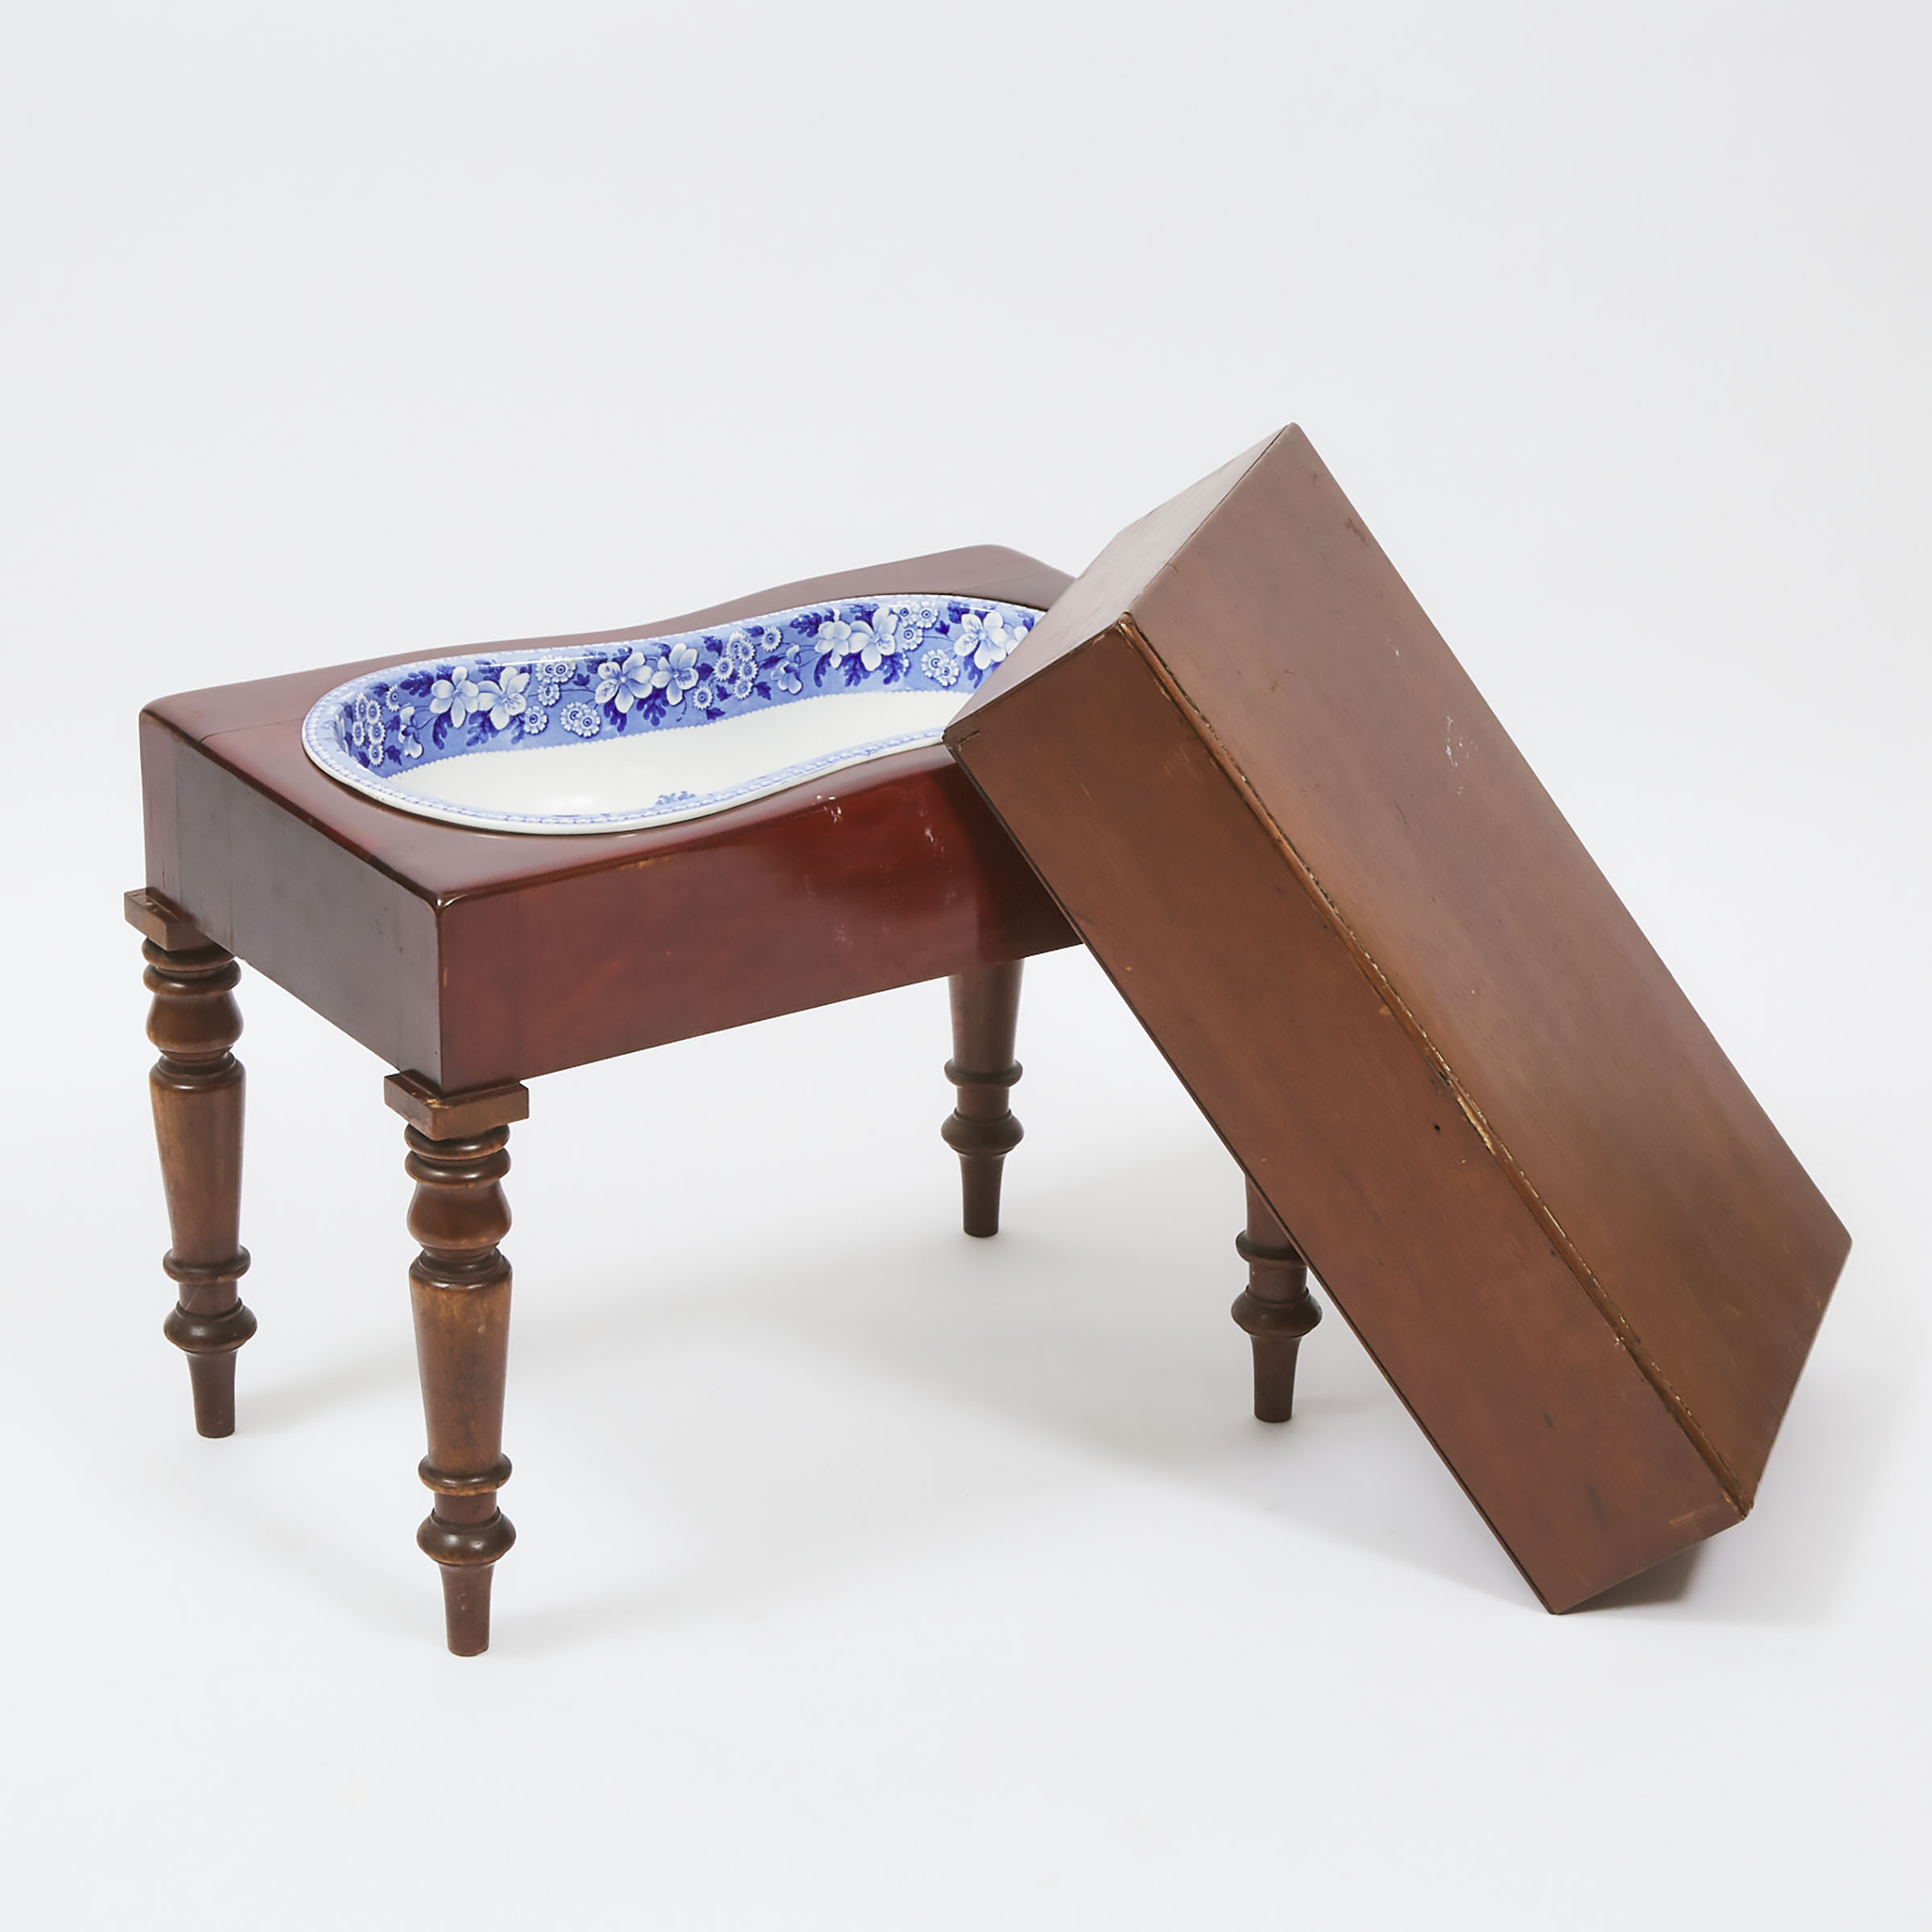 Victorian Mahogany Bidet Table, 19th century